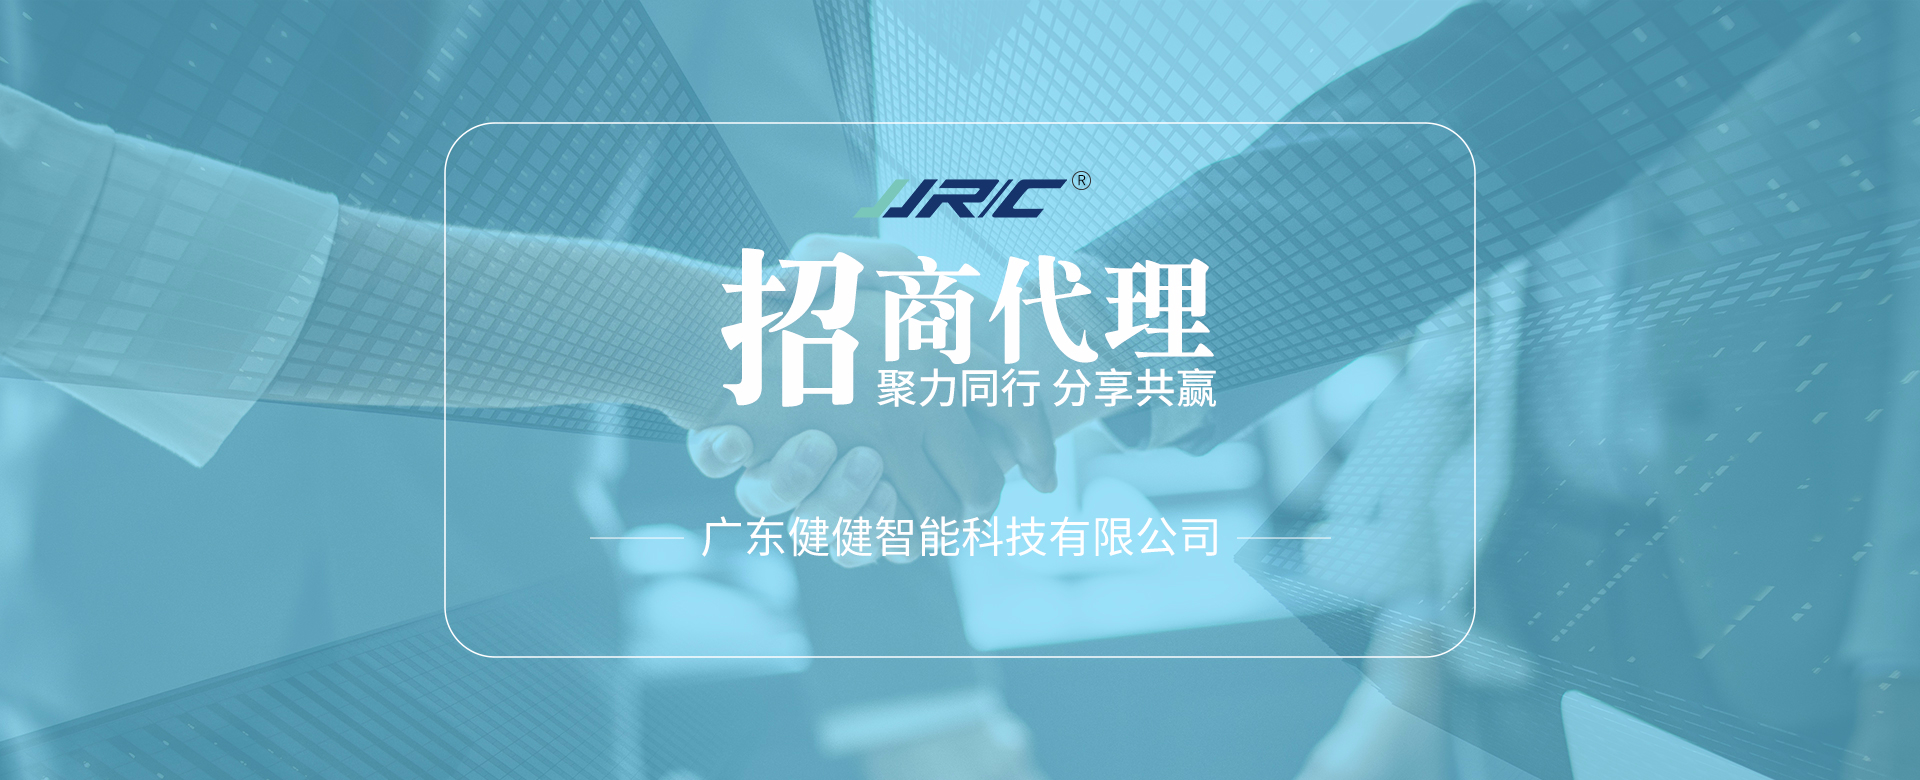 JJR/C招募计划